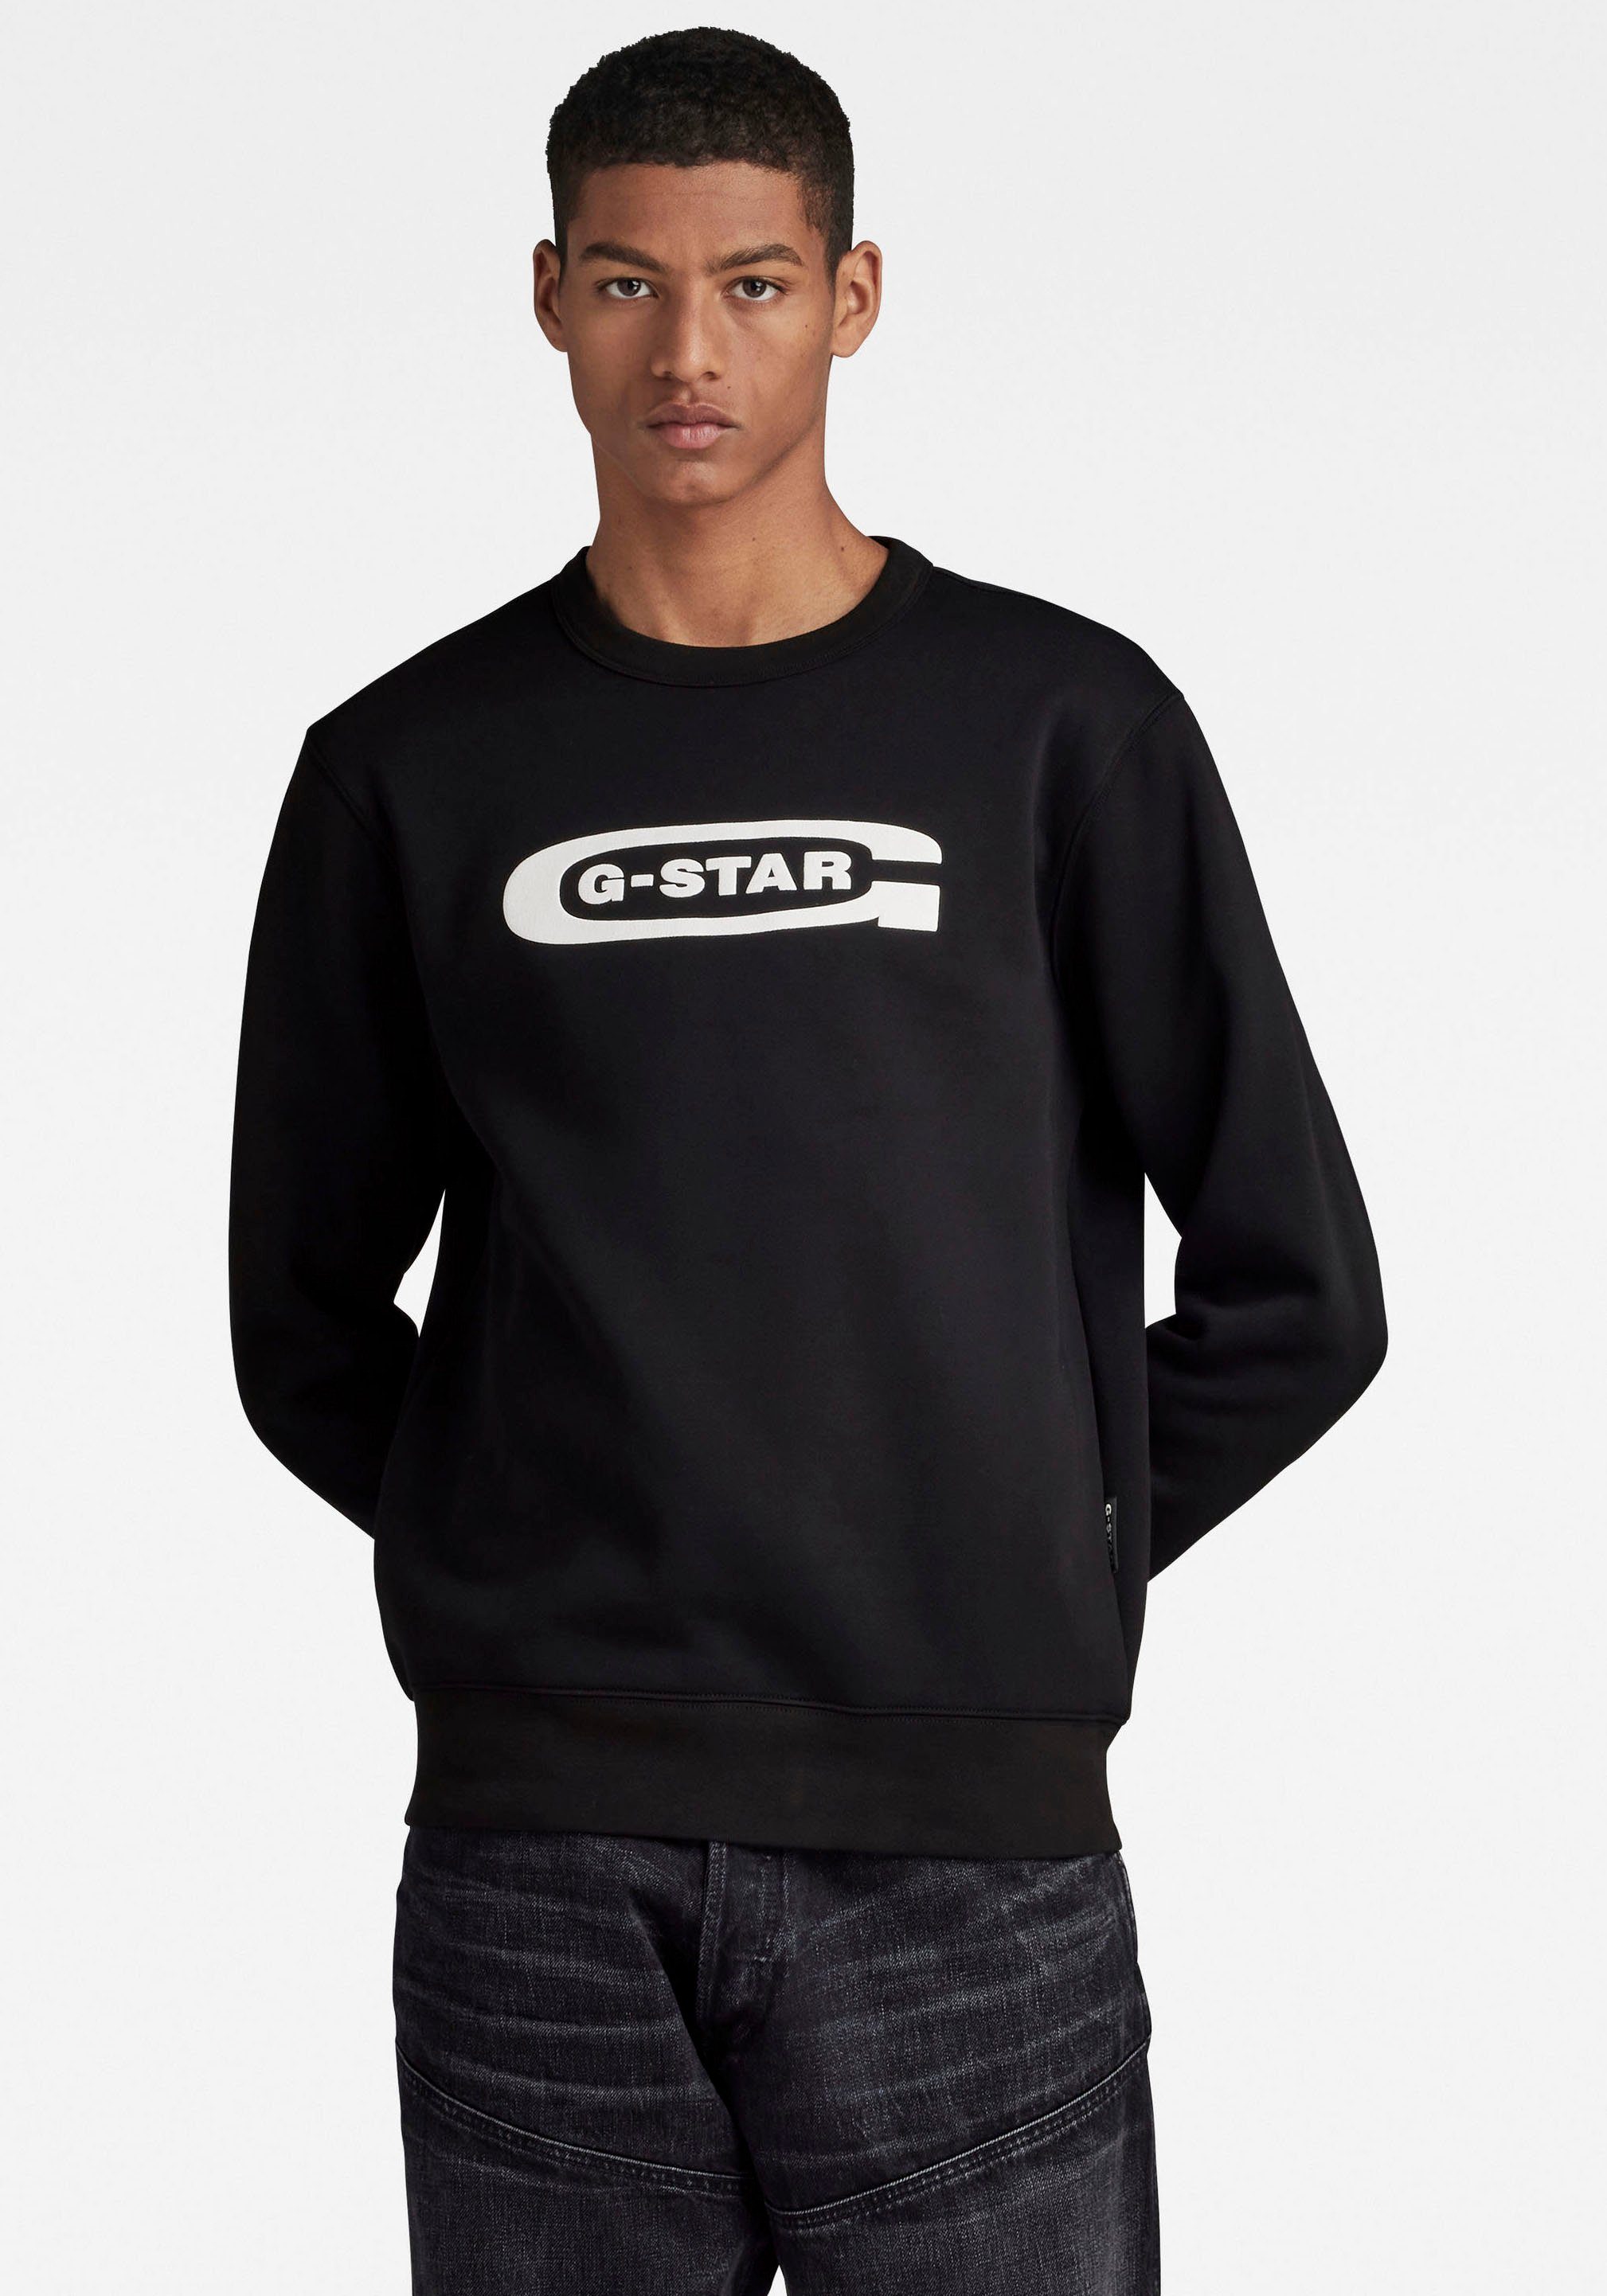 G-Star RAW Old School Logo Sweater Zwart Heren